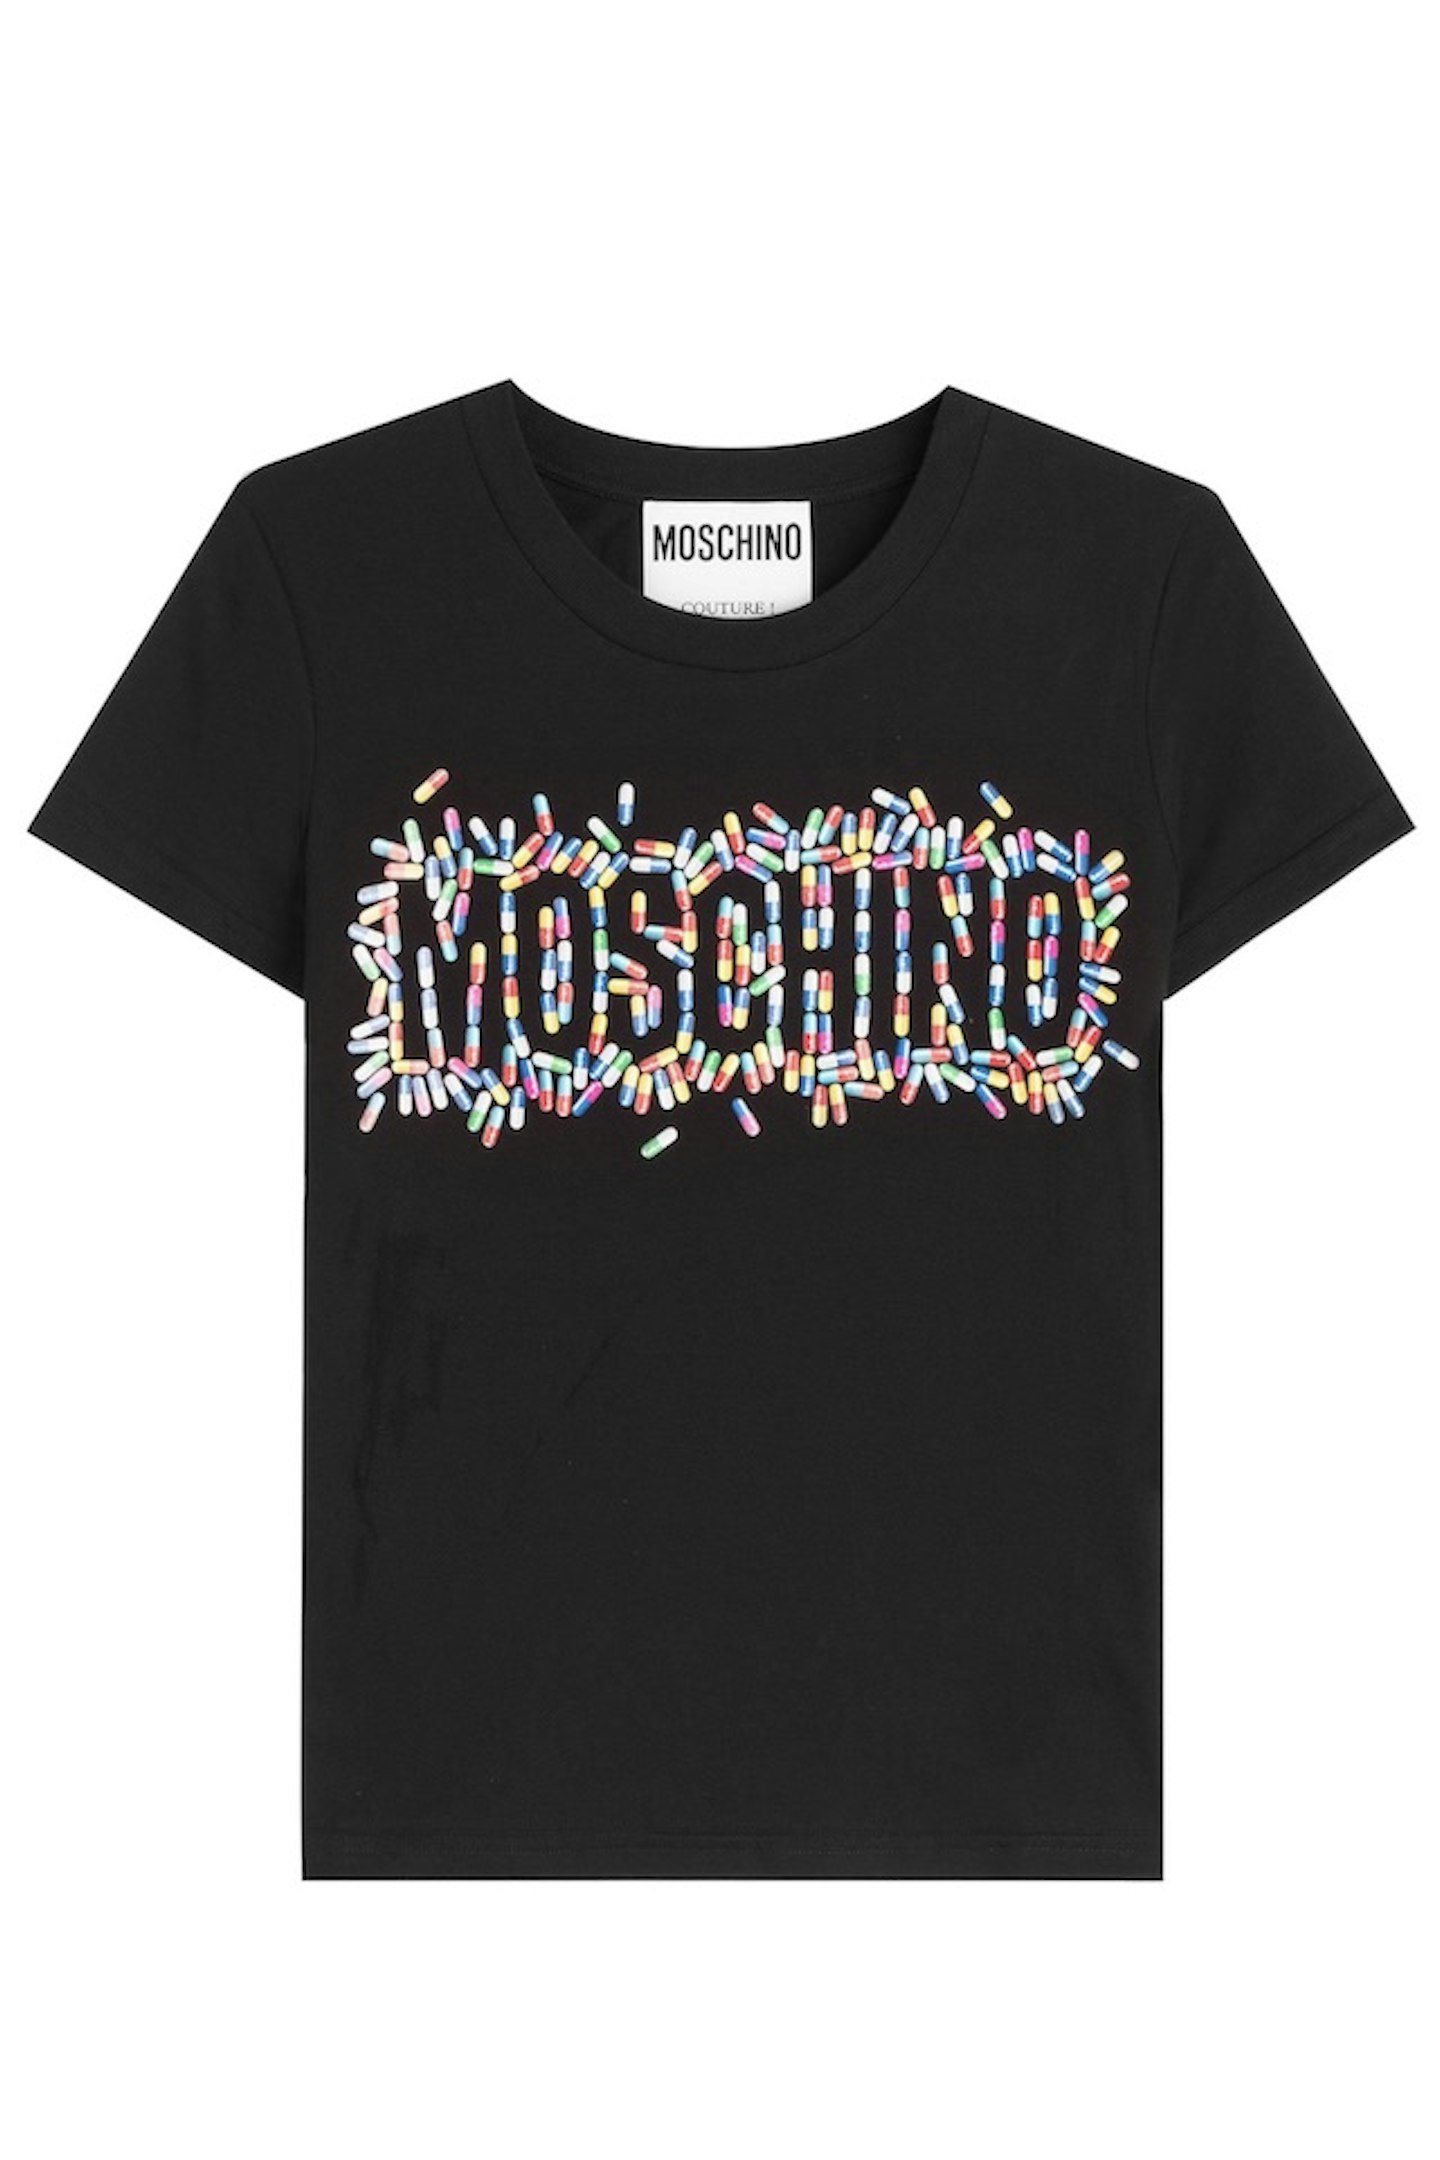 Moschino logo tee